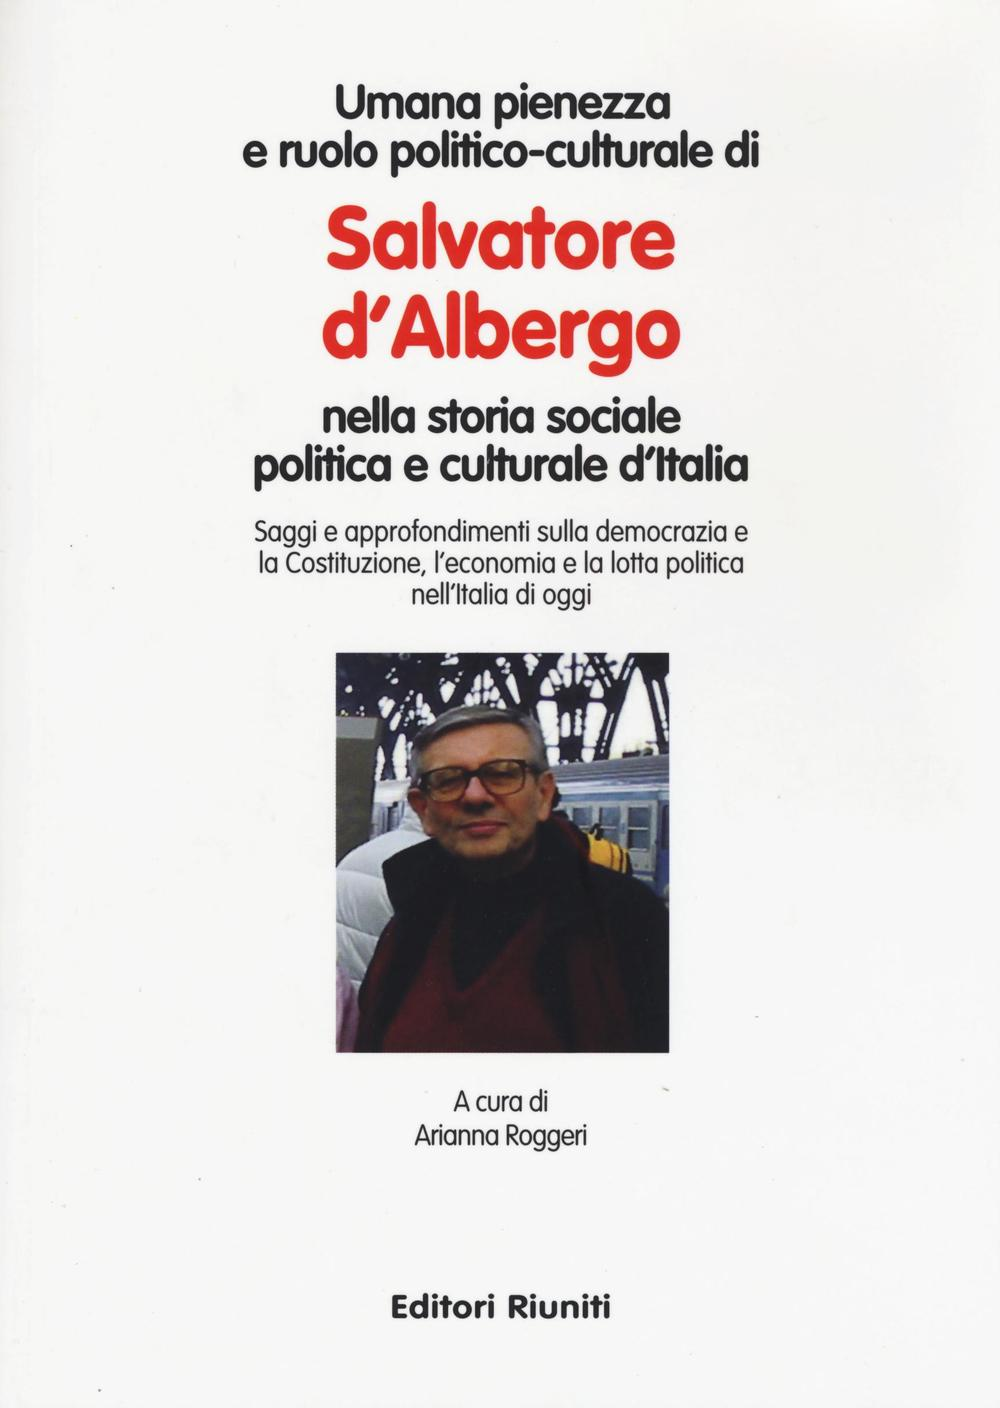 Image of Umana pienezza e ruolo politico-culturale di Salvatore d'Albergo nella storia sociale politica e culturale d'Italia